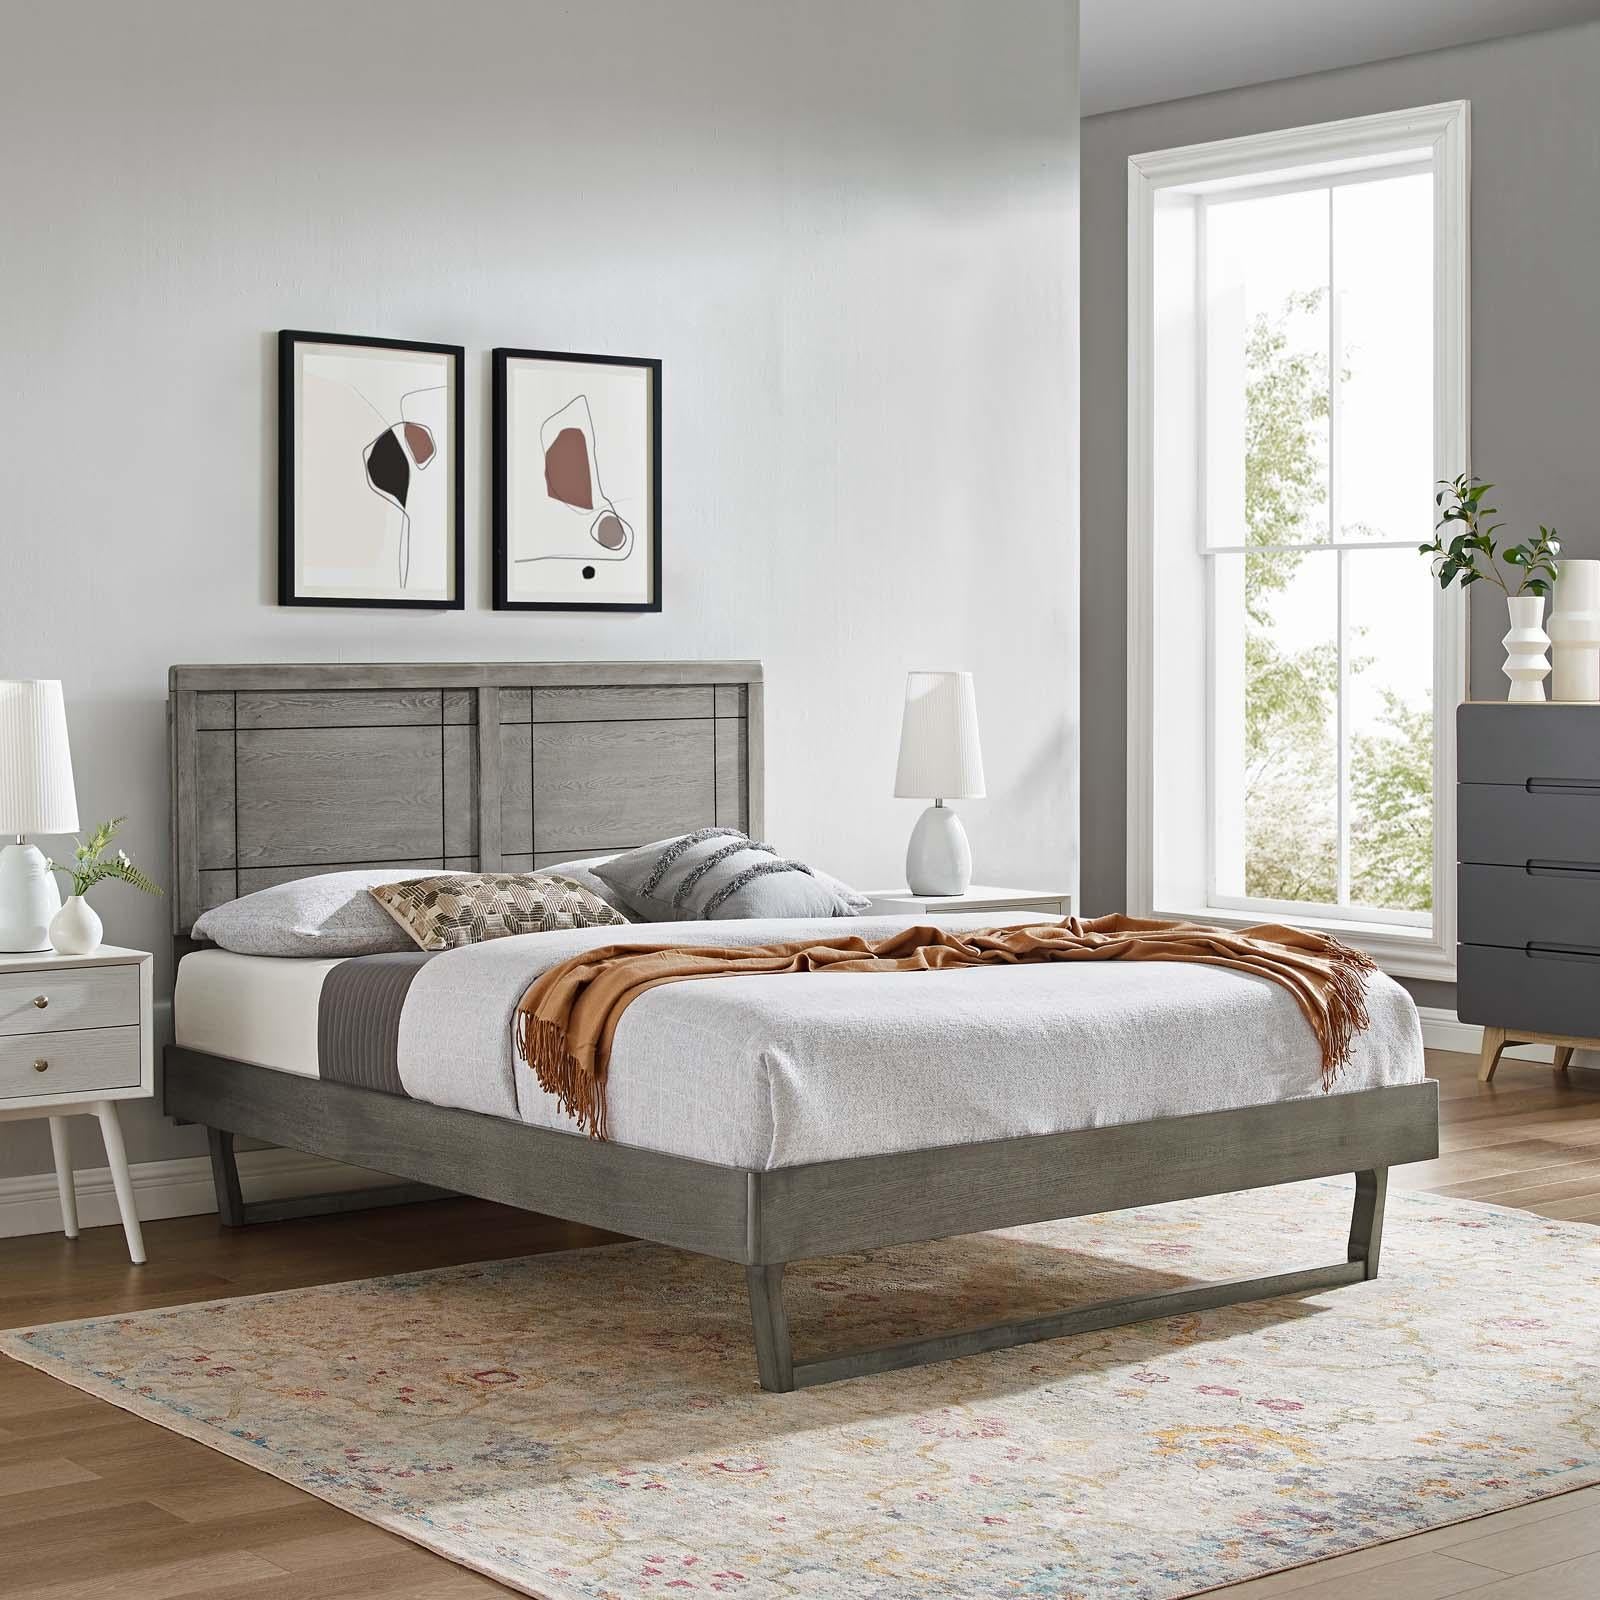 Modway Furniture Modern Marlee King Wood Platform Bed With Angular Frame - MOD-6626